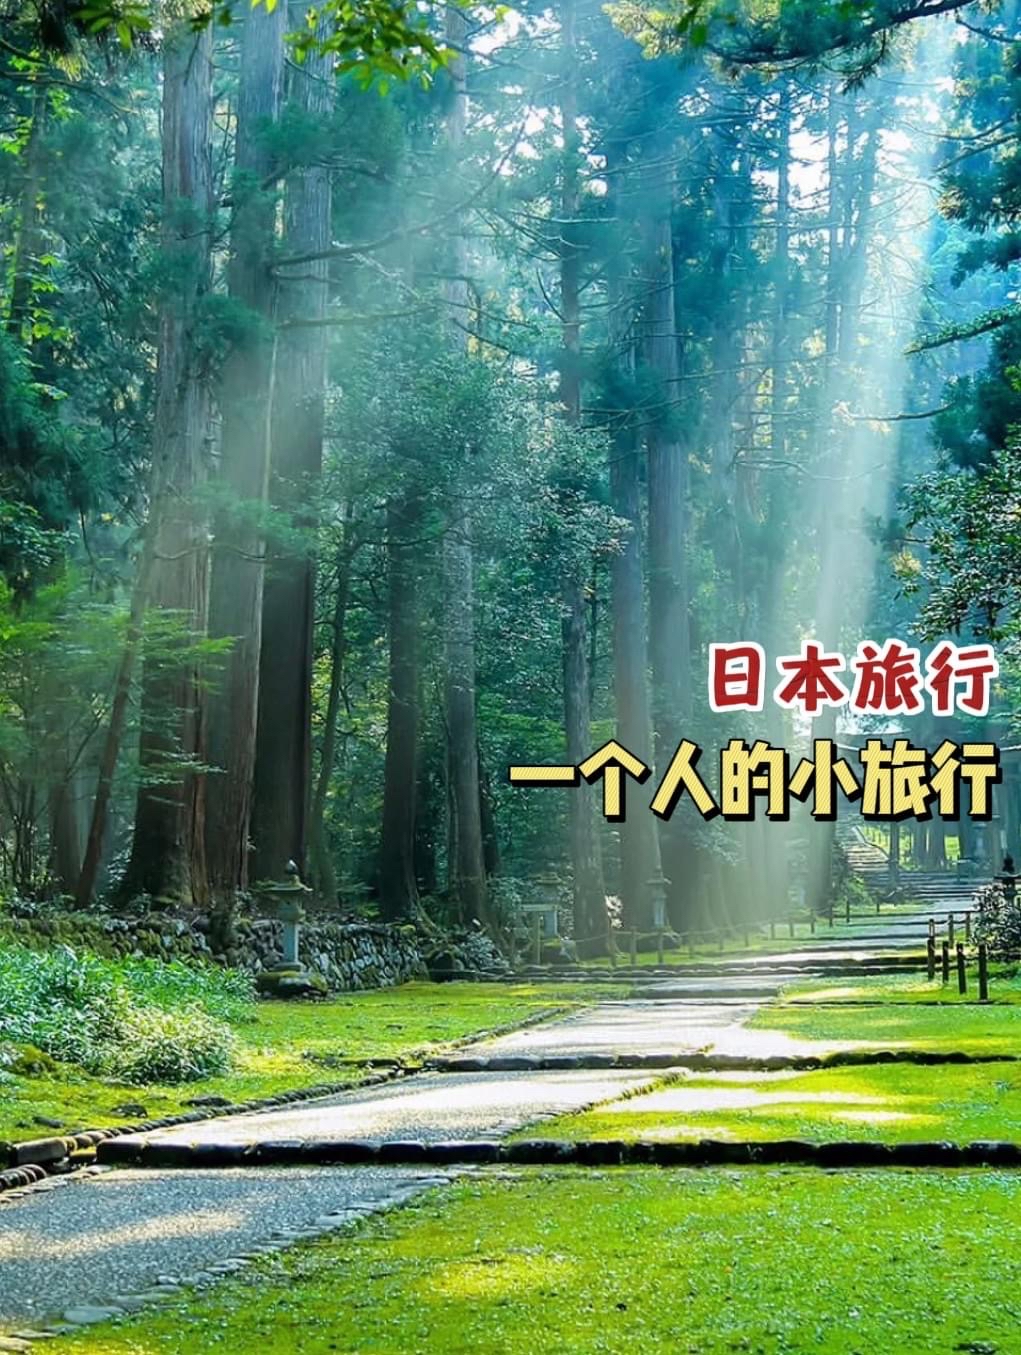 【#日本旅行】 #带你走进神秘幻境的精灵之森